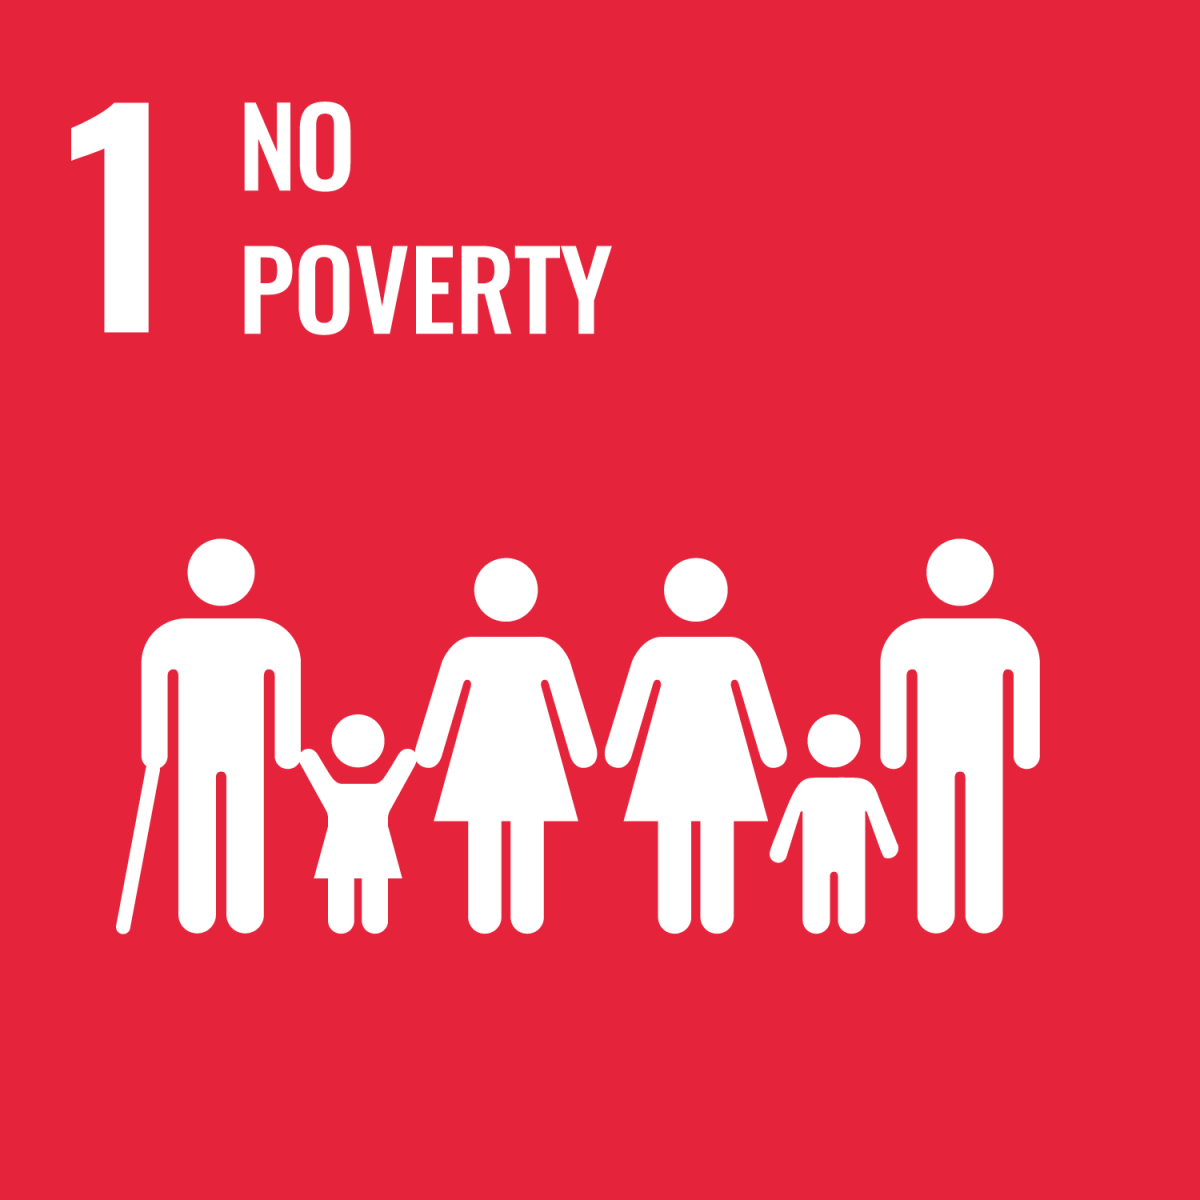 Shows SDG 1 - No Poverty